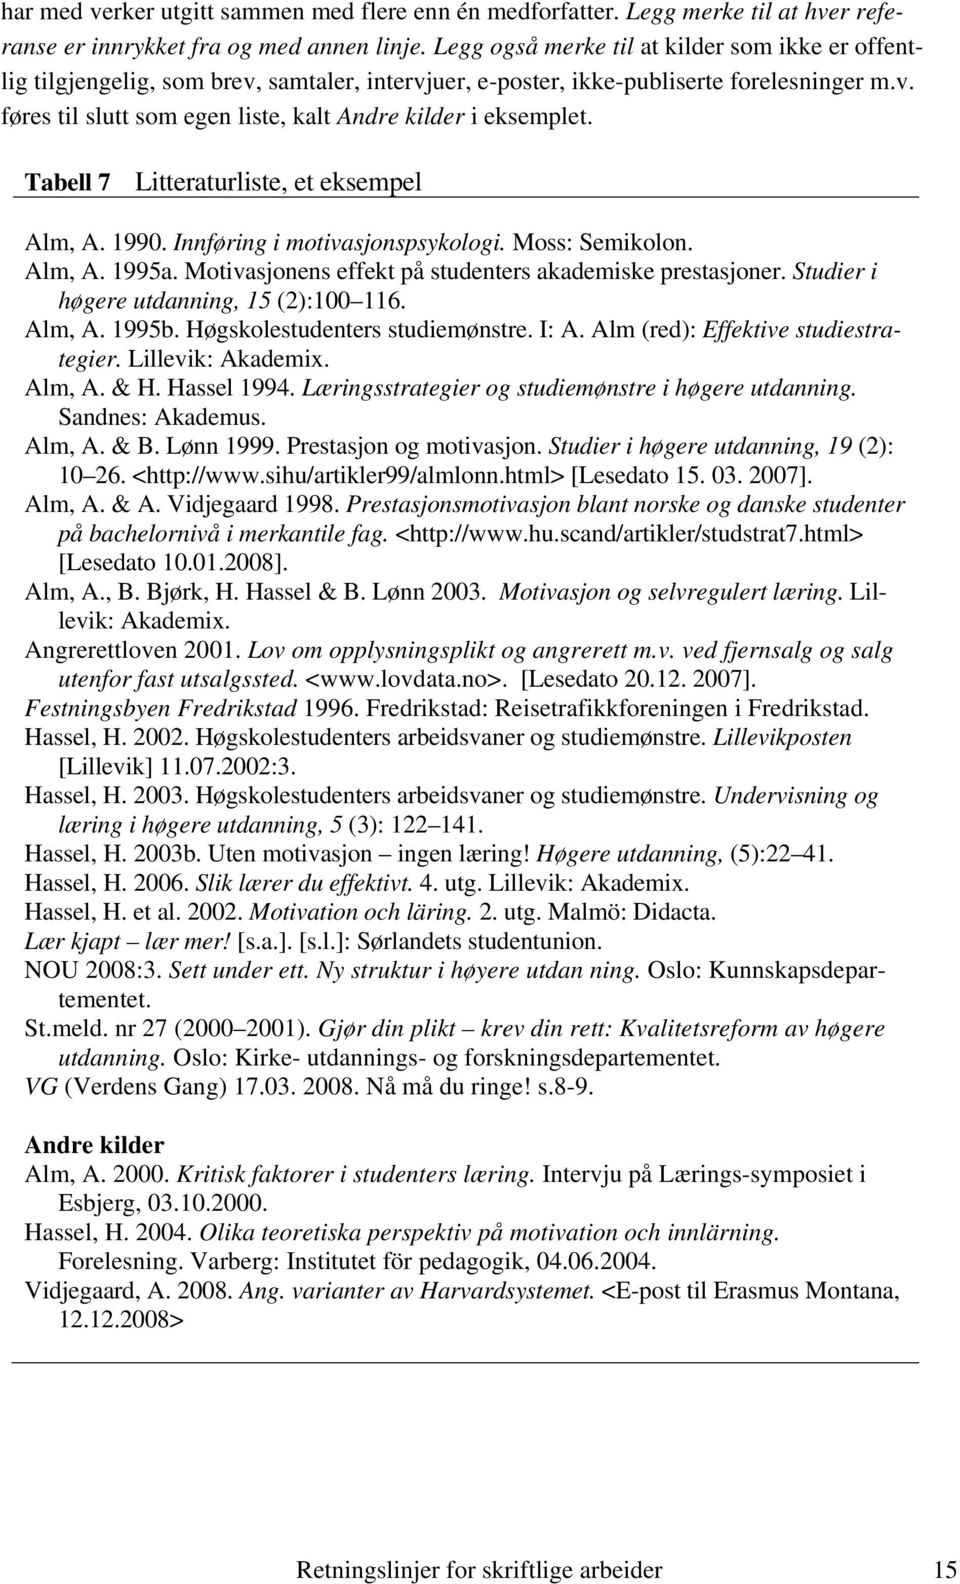 Tabell 7 Litteraturliste, et eksempel Alm, A. 1990. Innføring i motivasjonspsykologi. Moss: Semikolon. Alm, A. 1995a. Motivasjonens effekt på studenters akademiske prestasjoner.